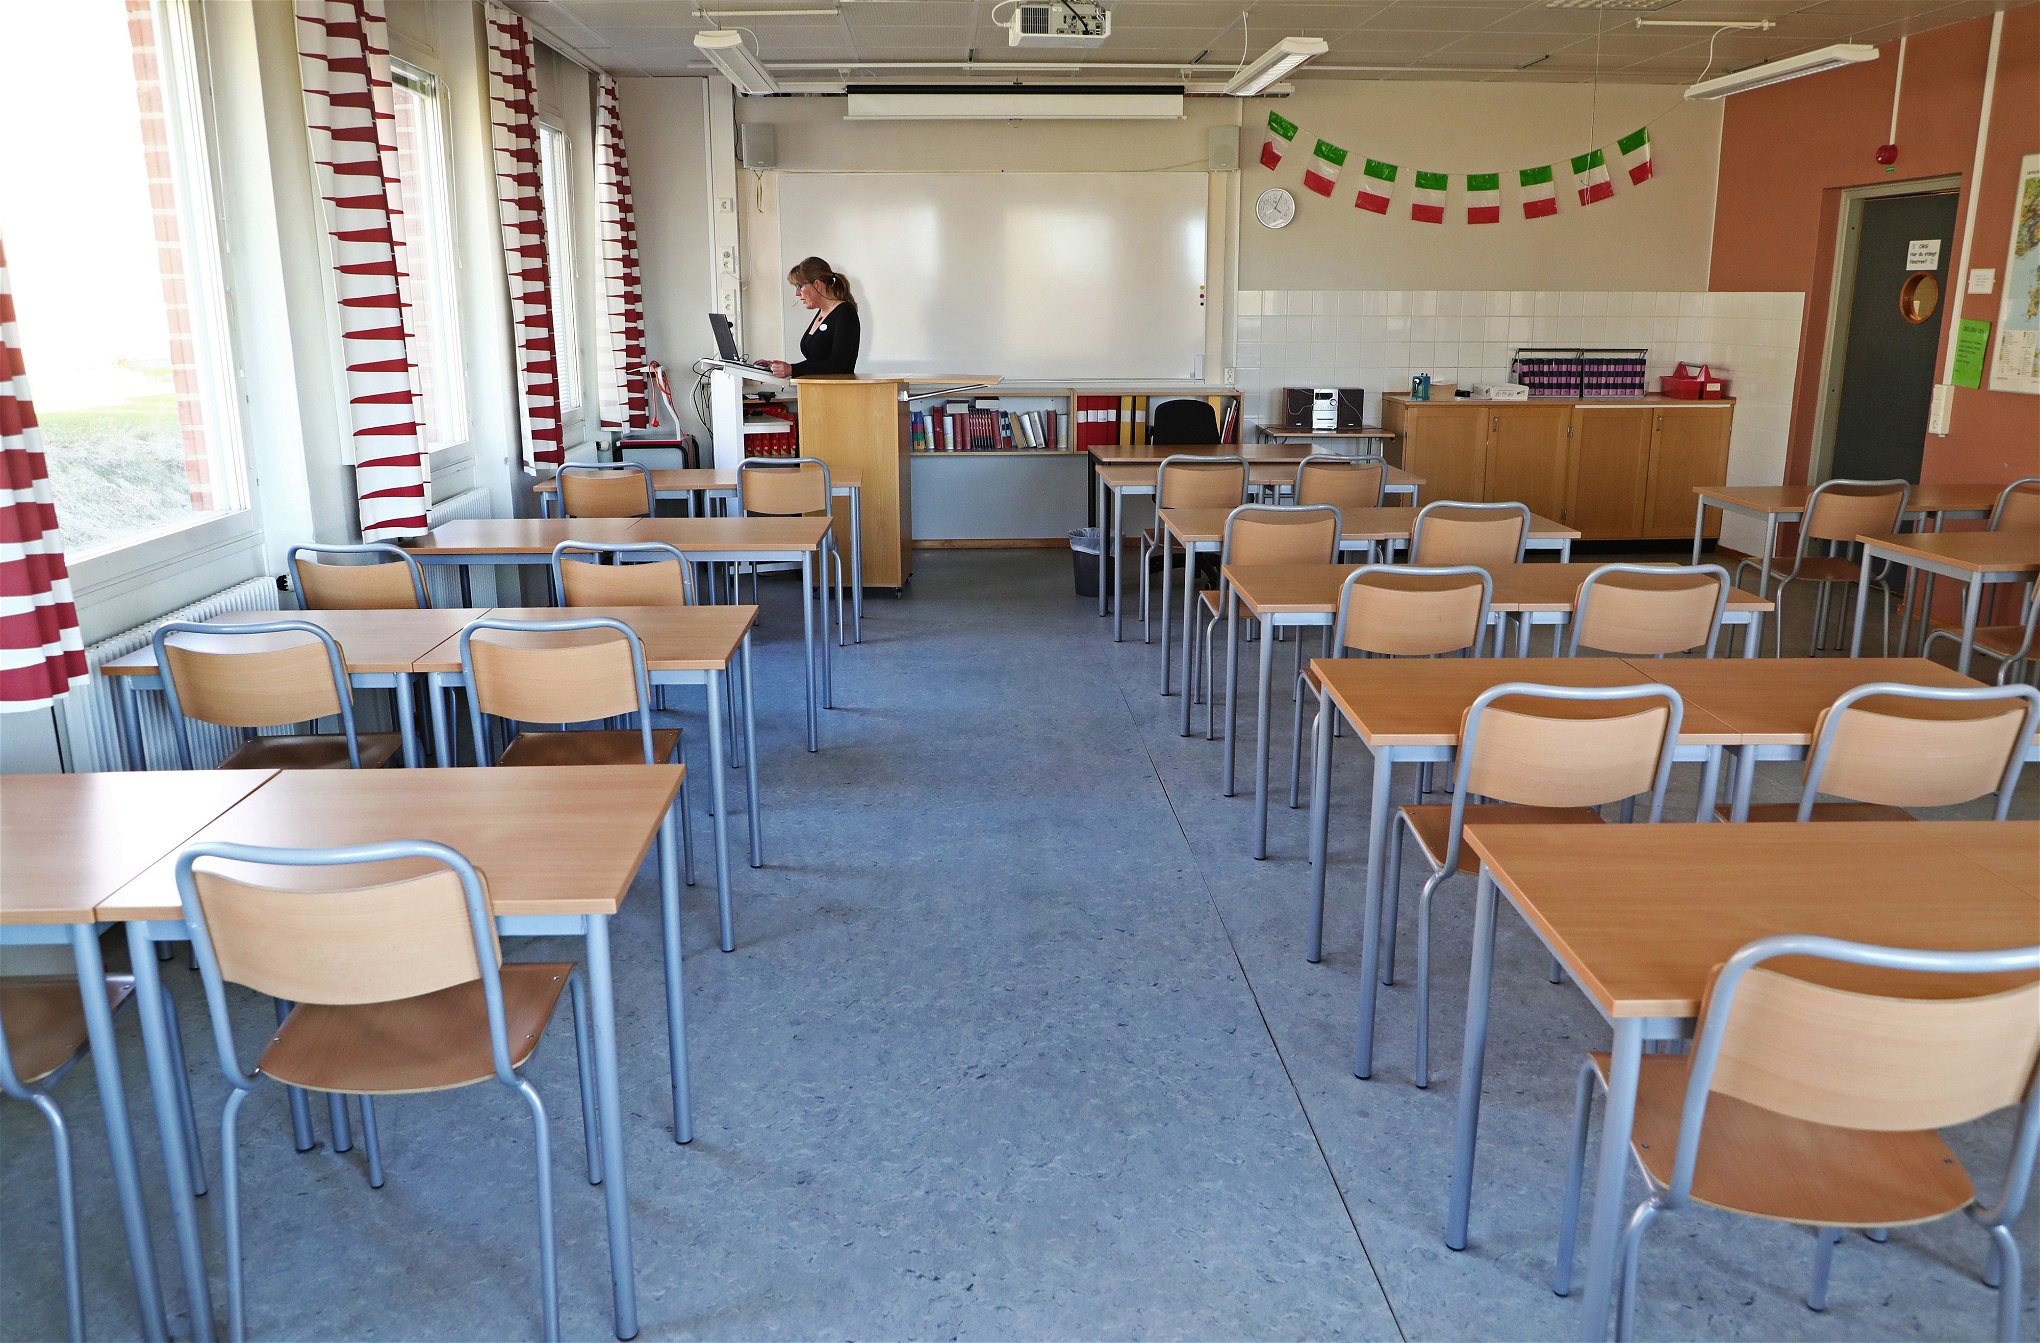 En lärare ensam framför en dator i ett klassrum där bänkarna står tomma.